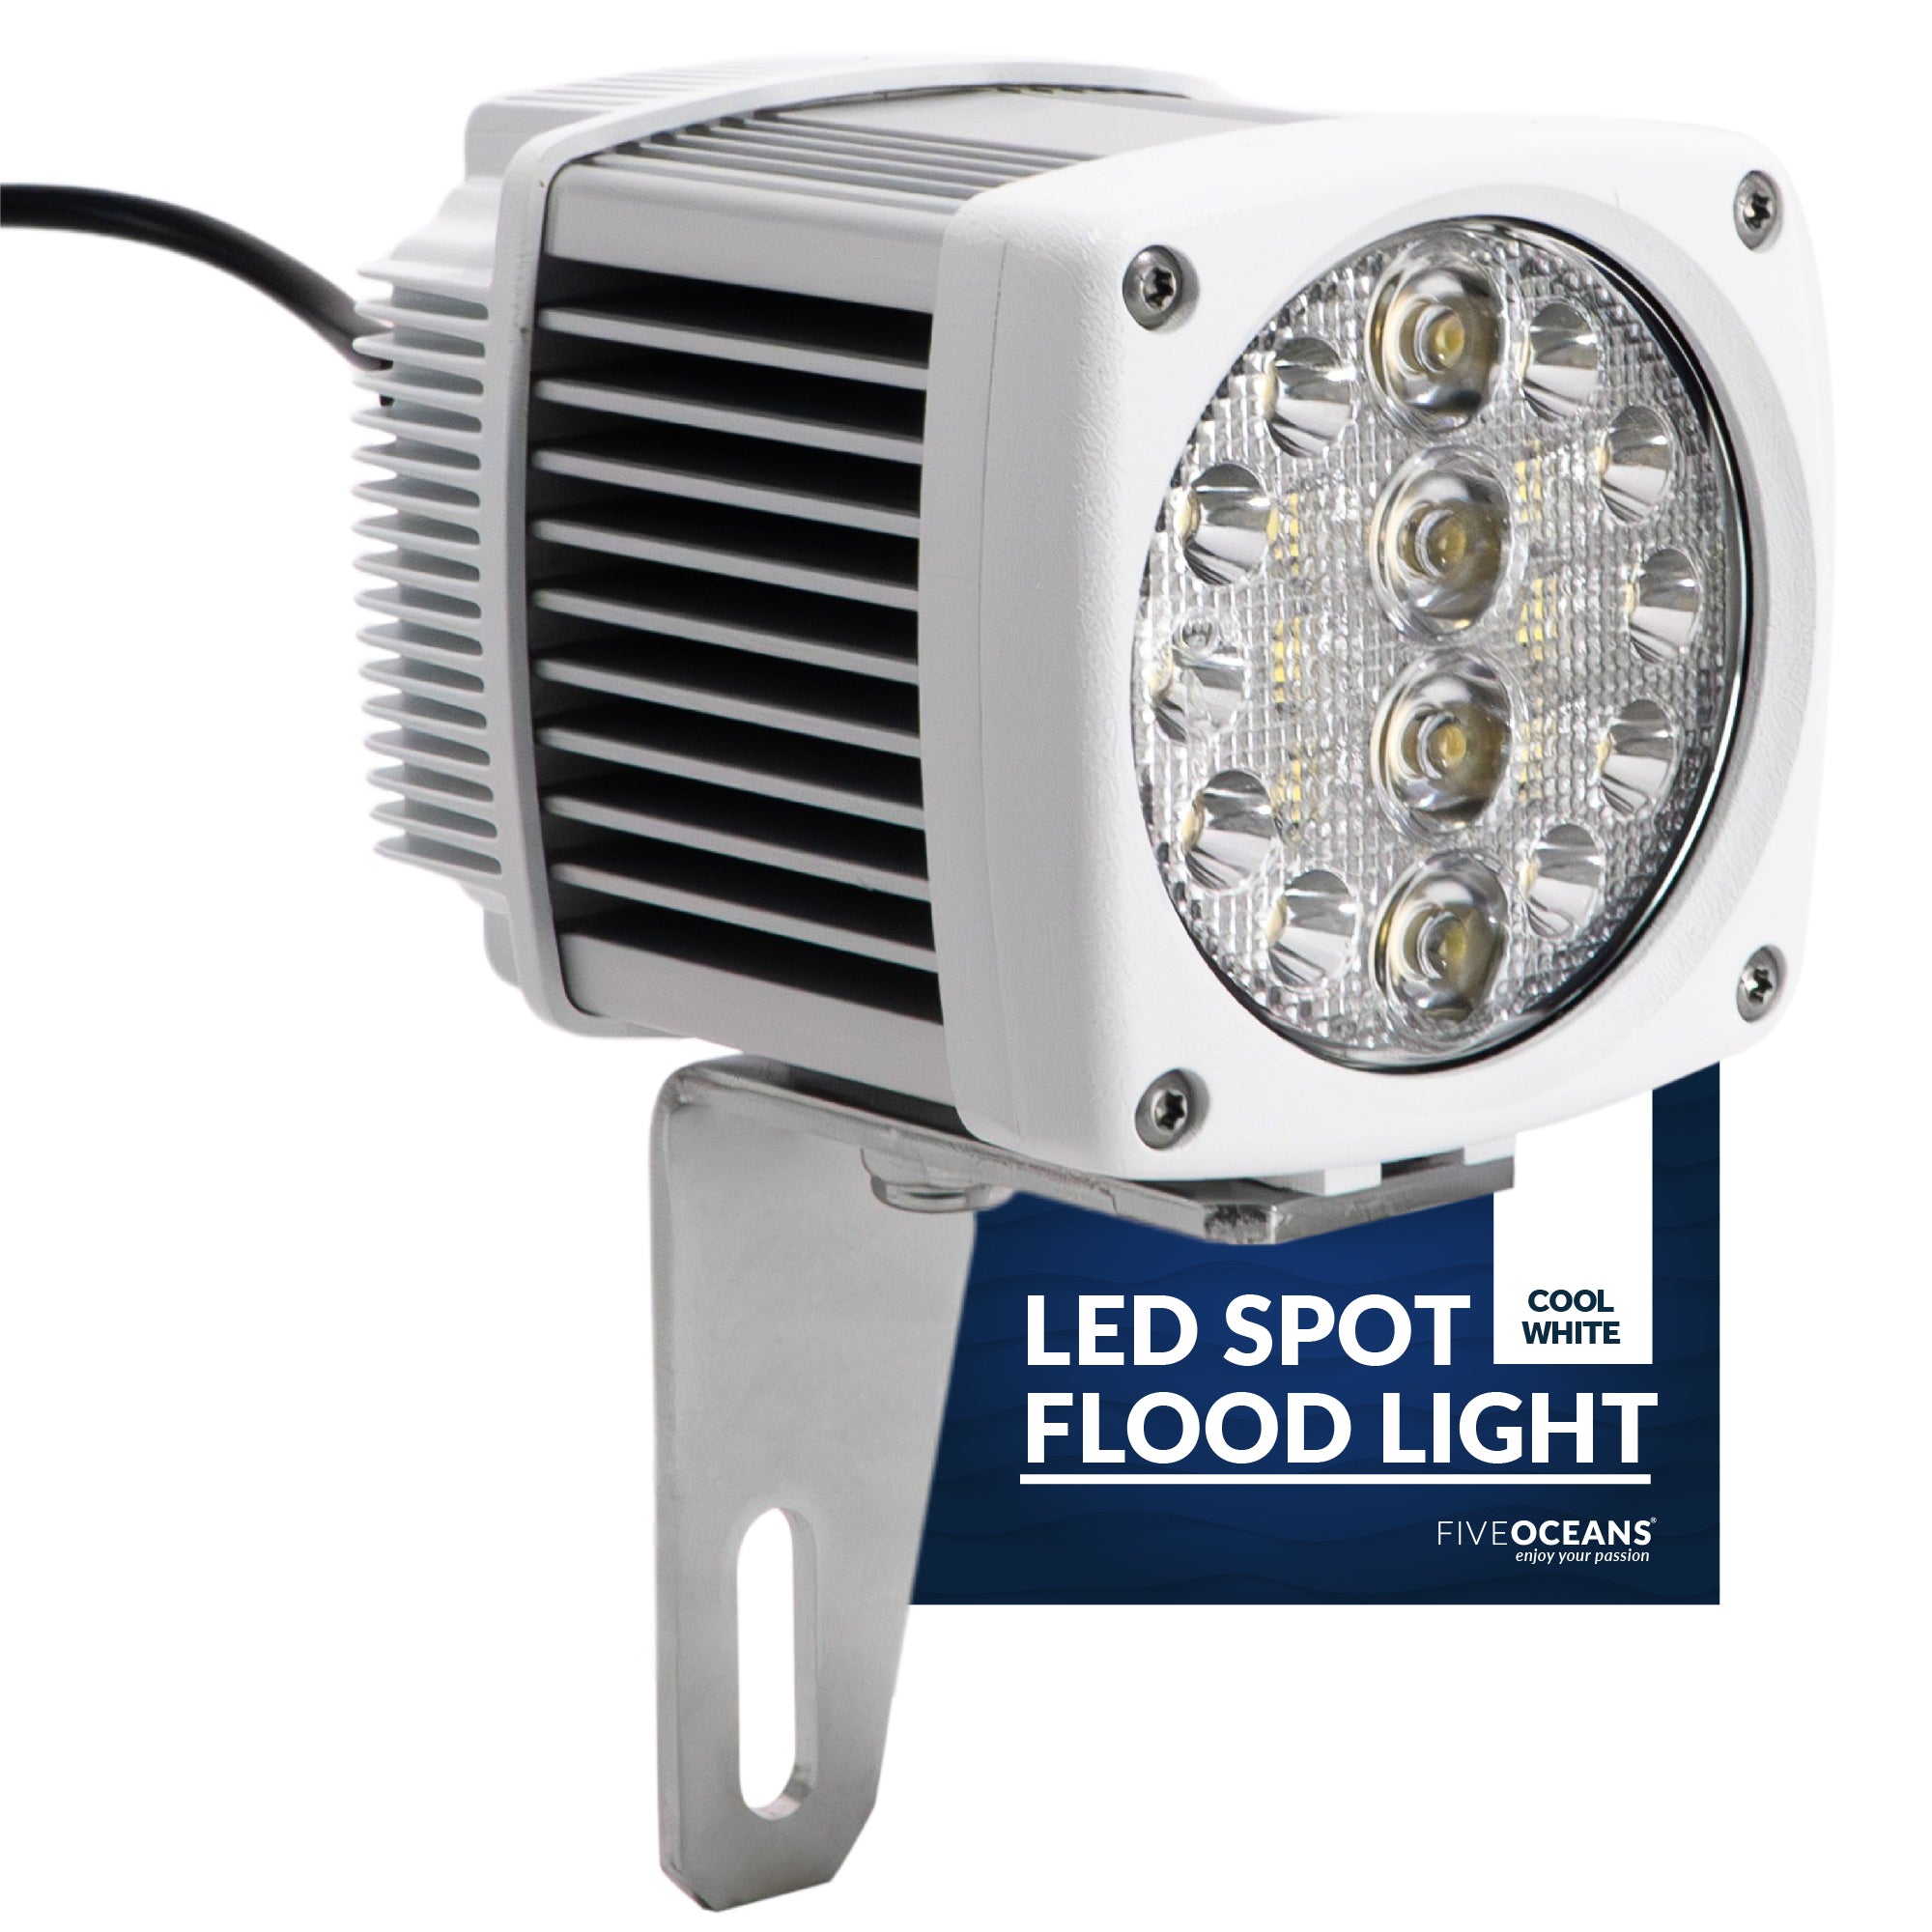 Spreader LED Flood Spotlight, 2300 Lumens, Cool White - FO3894